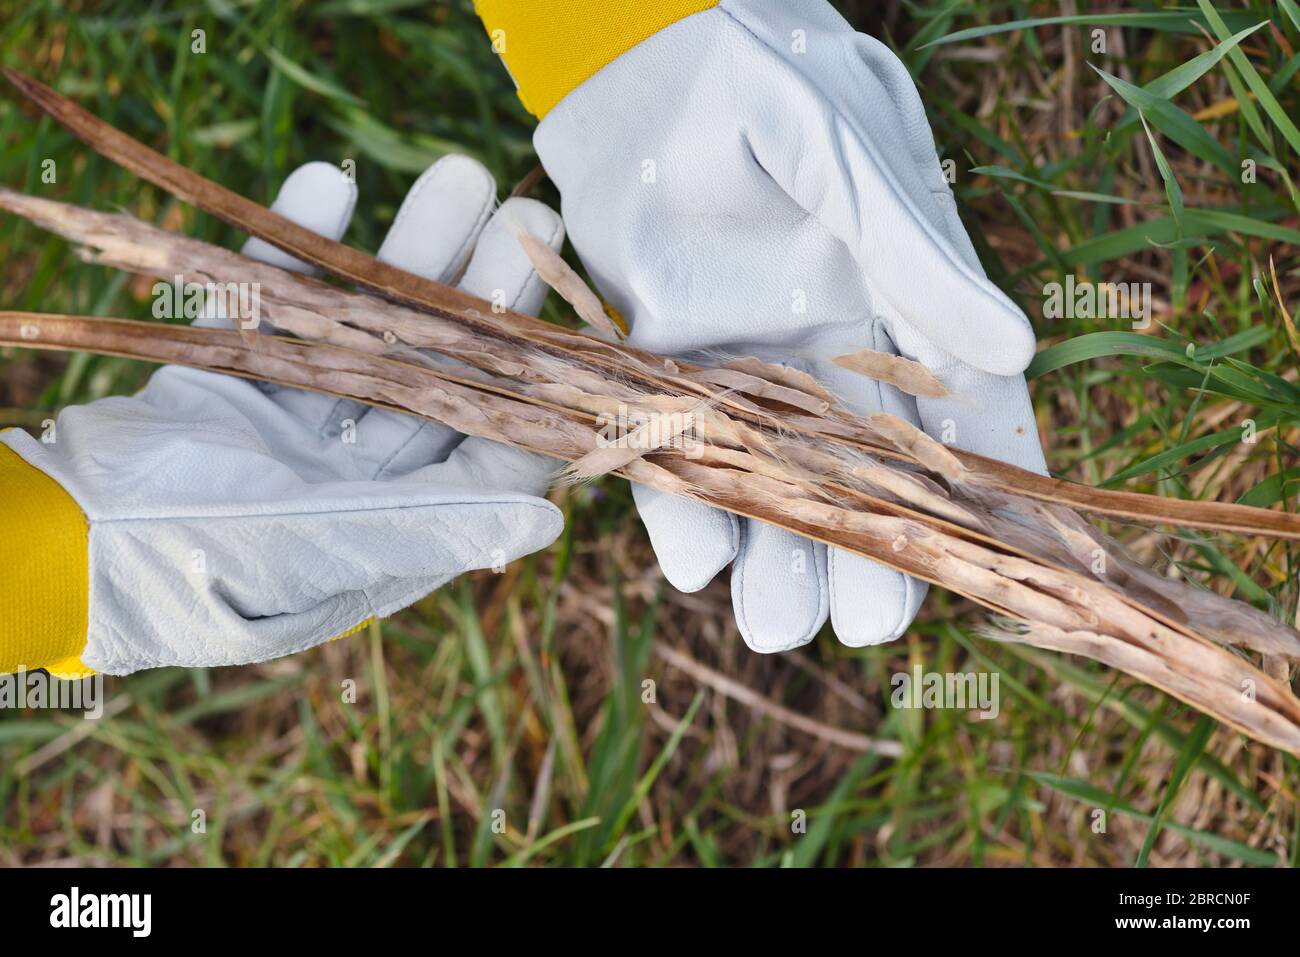 Getrocknete Bohnen Hülsen von Catalpa Baum in den Händen des Gärtners Stockfoto